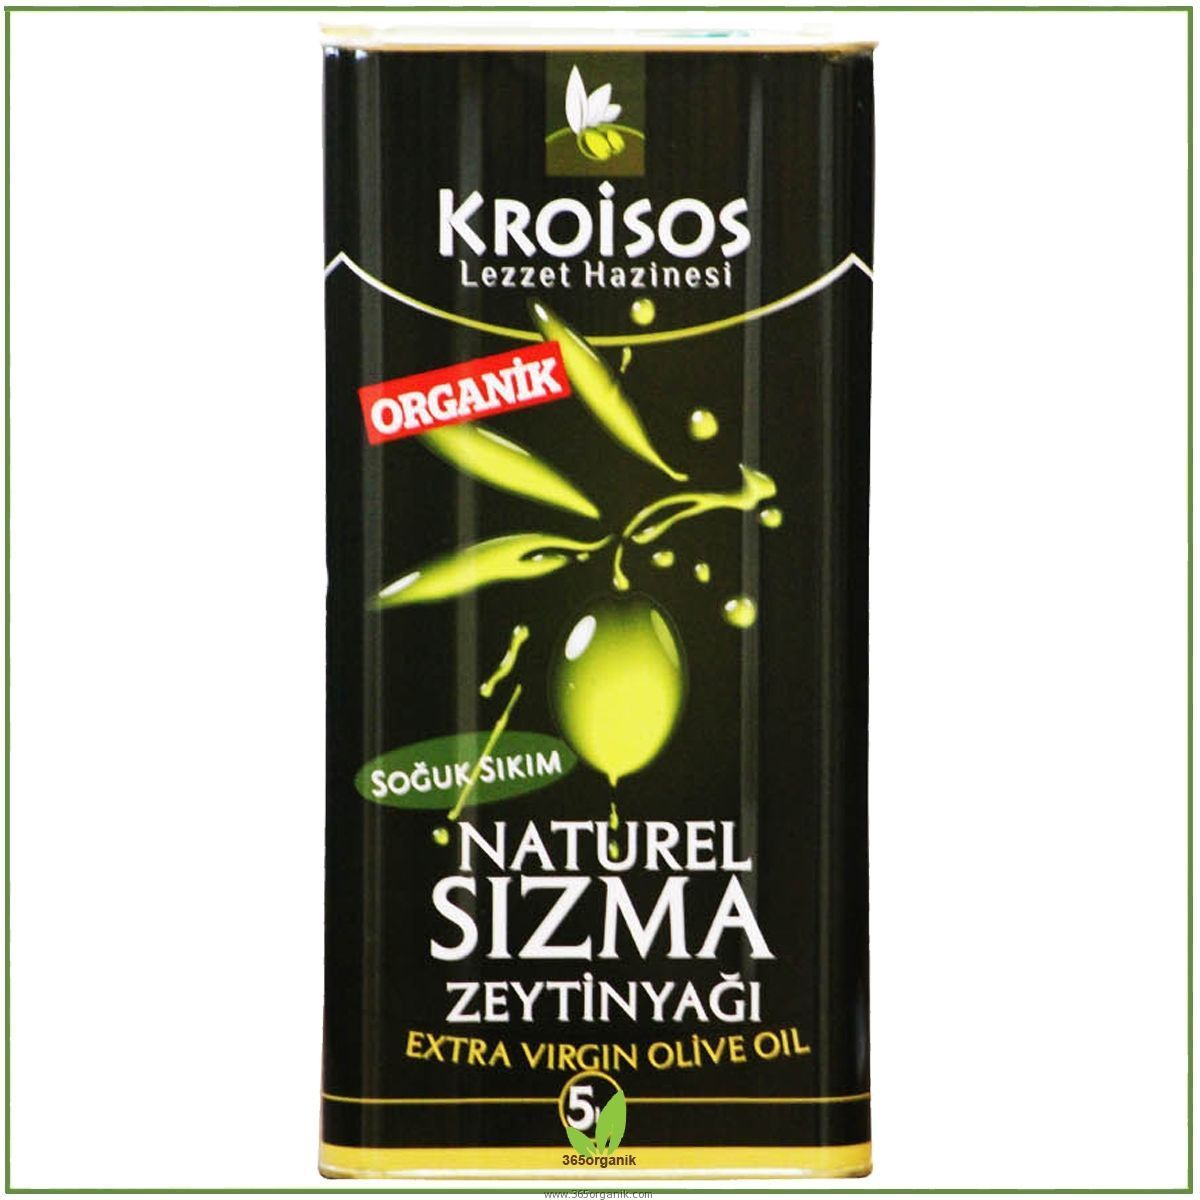 Kroisos Organik Zeytinyağı 5 Lt Teneke Ambalaj | Kroisos | Organik Zeytinyağları | 